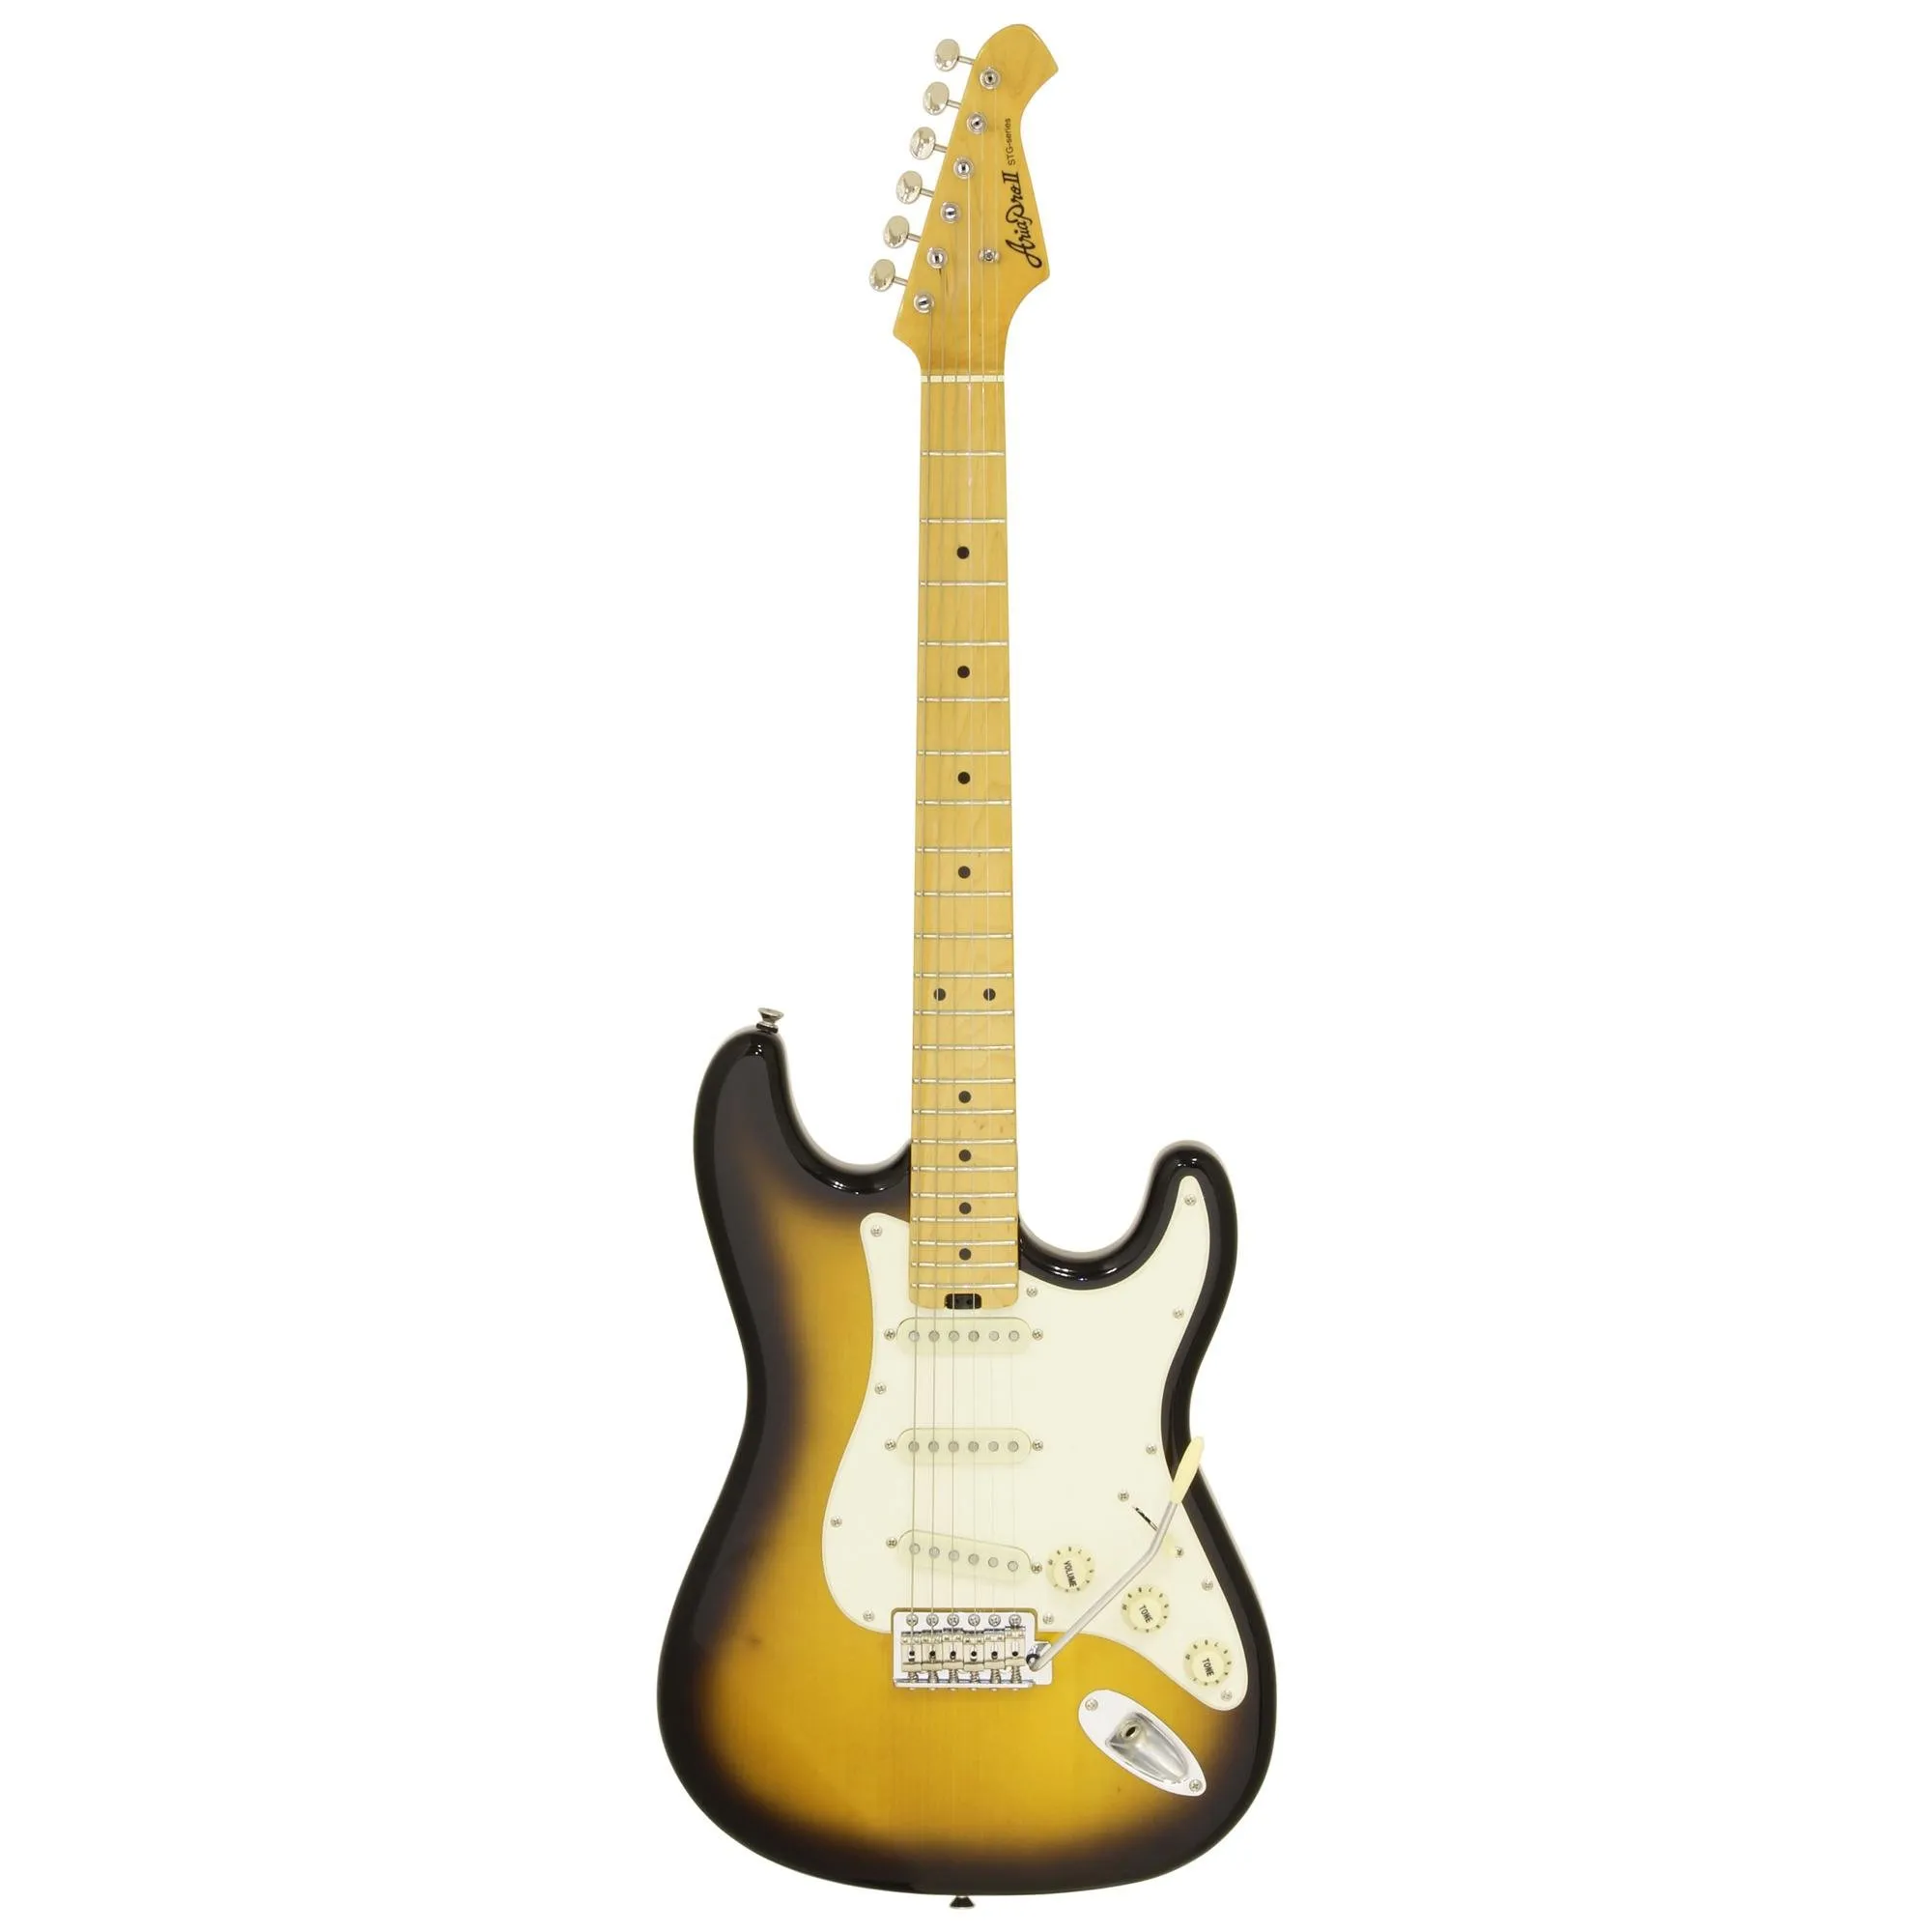 Guitarra Aria Pro II STG-57 2 Tone Sunburst por 2.689,00 à vista no boleto/pix ou parcele em até 12x sem juros. Compre na loja Mundomax!